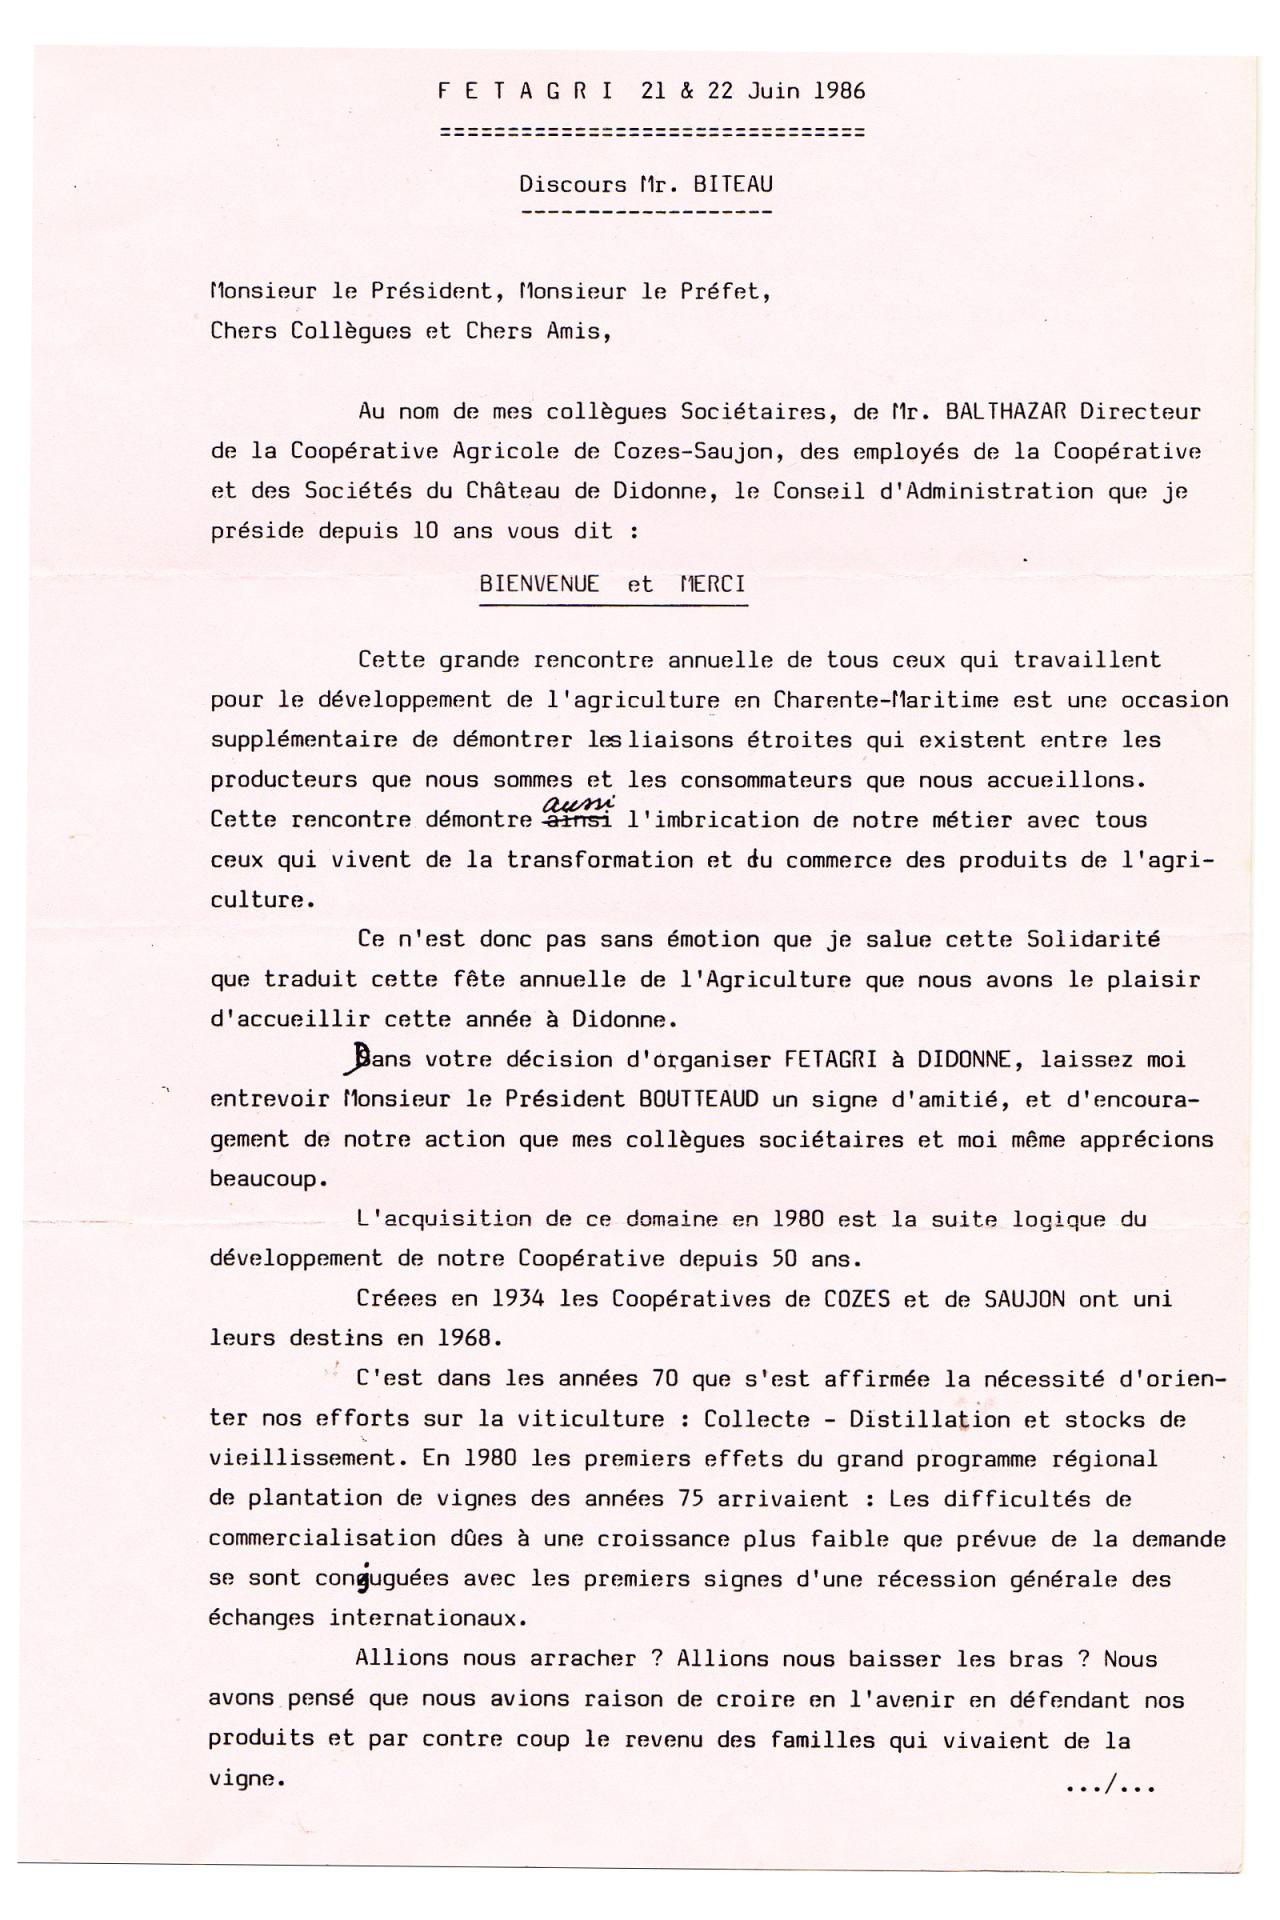 1986 fetagri didonne discours biteau 21 juin page 1 sur 2